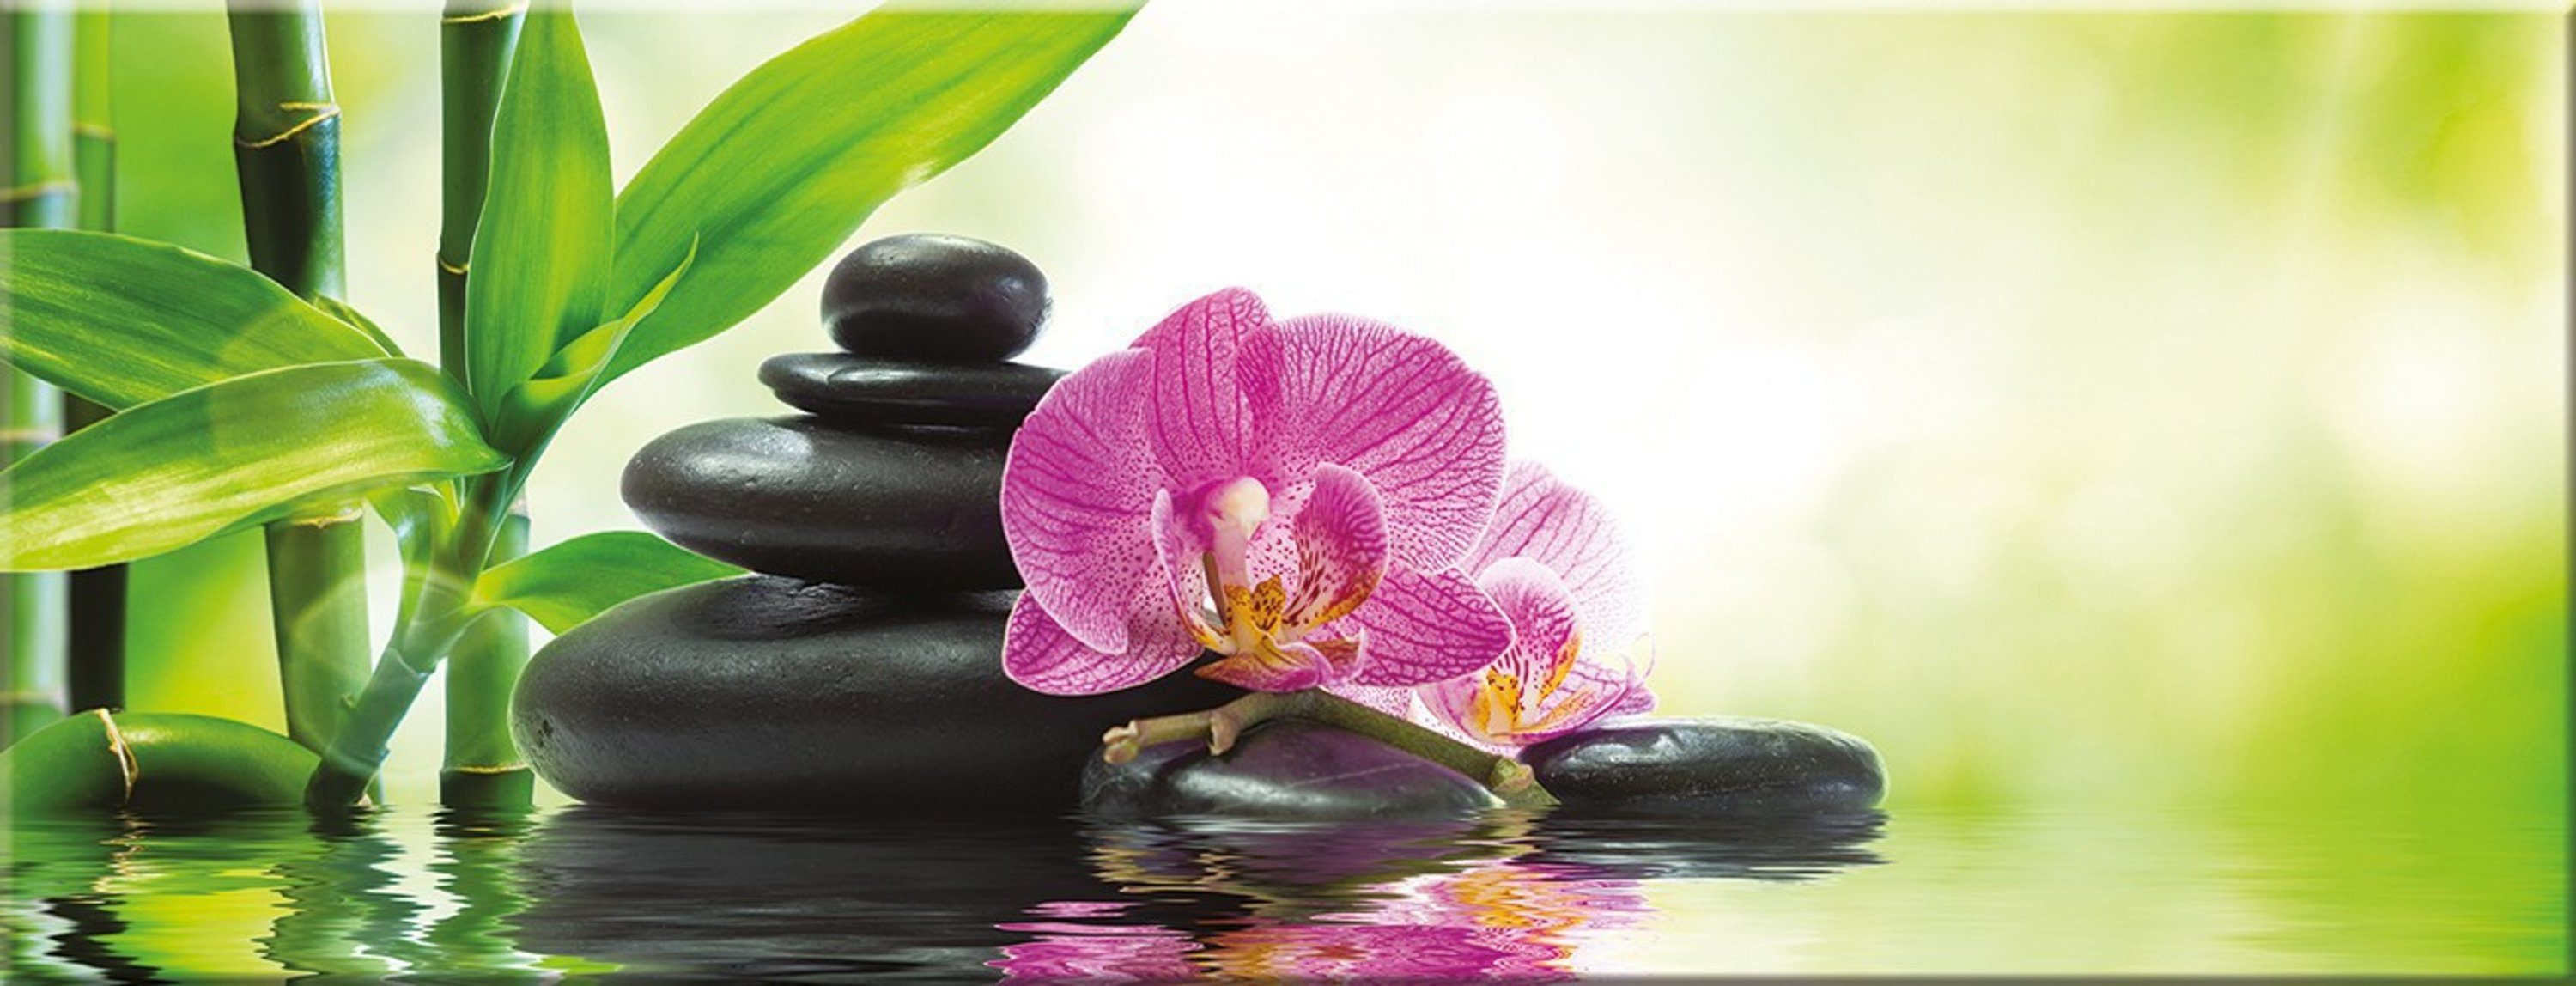 artissimo Glasbild Glasbild Glas Bild Steine Orchidee, und Zen Natur: Wellness Spa 80x30cm aus Bambus